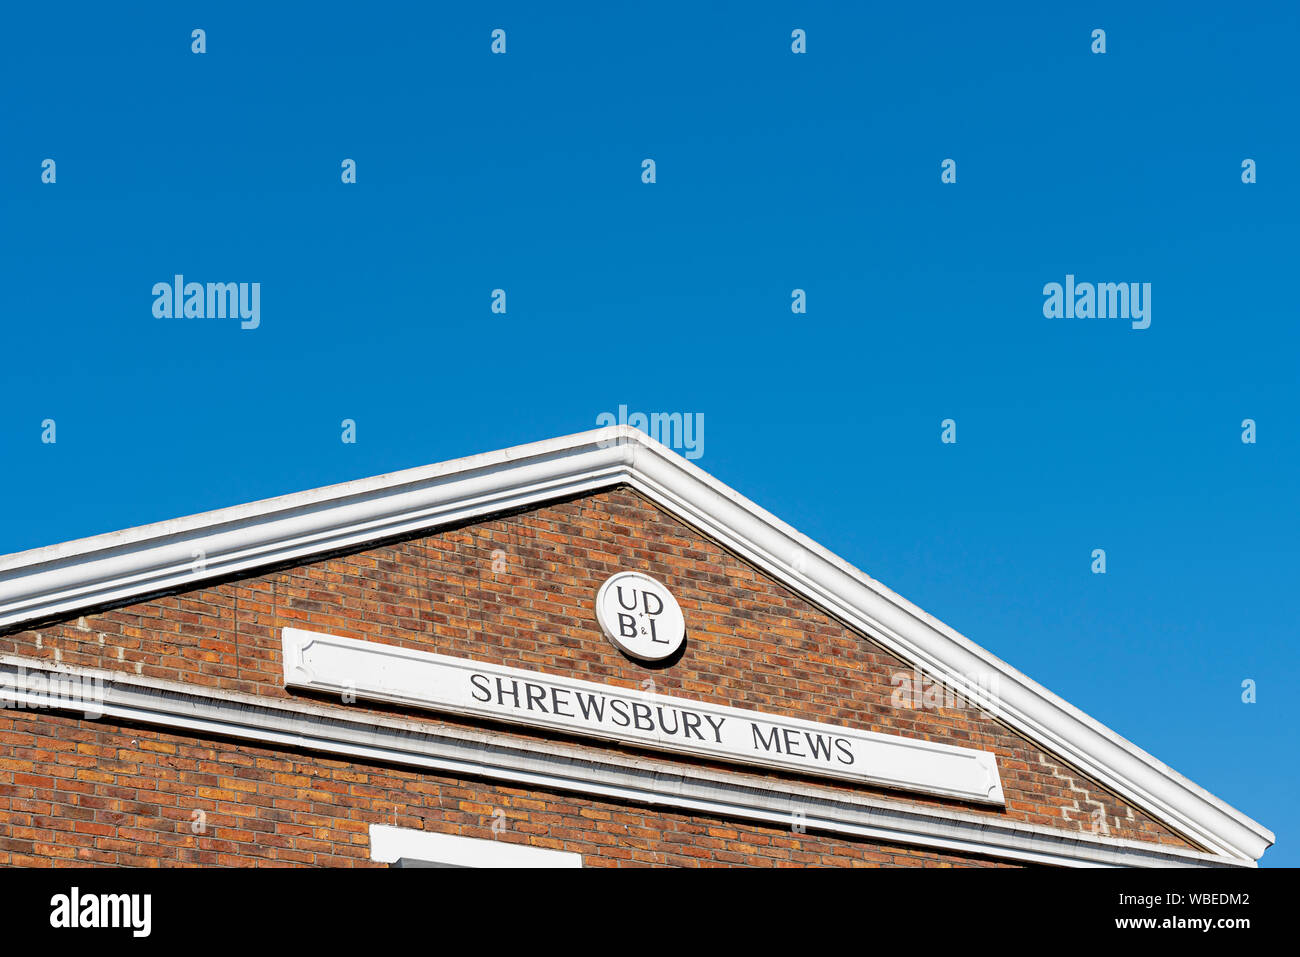 Shrewsbury Mews, Notting Hill, London W2. Grundstück Gebäude Dekoration unterzeichnen. UD B&L. Blue Sky. Platz für Kopie Stockfoto